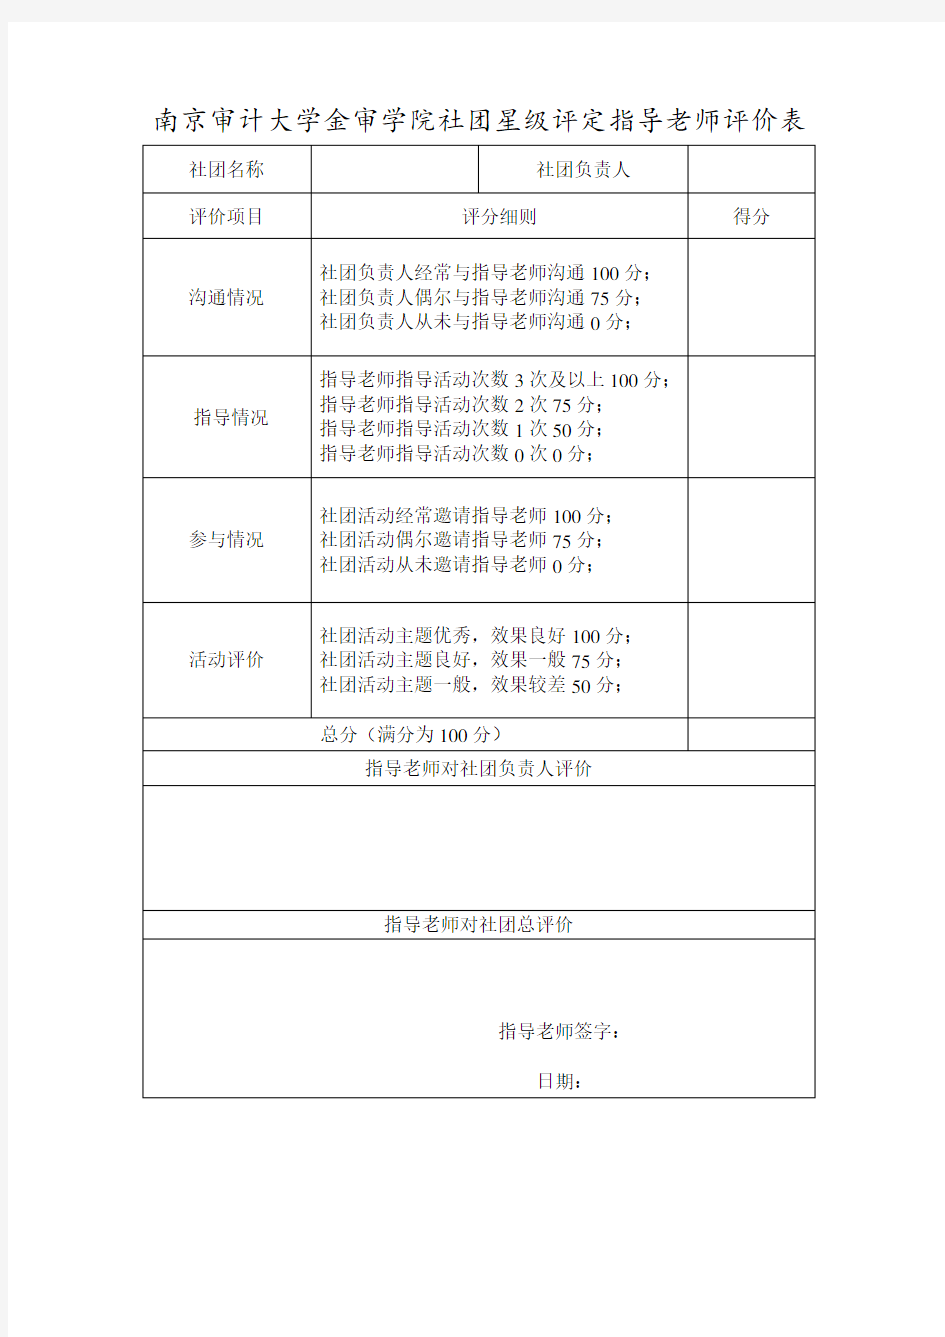 南京审计大学金审学院社团星级评定指导老师评价表